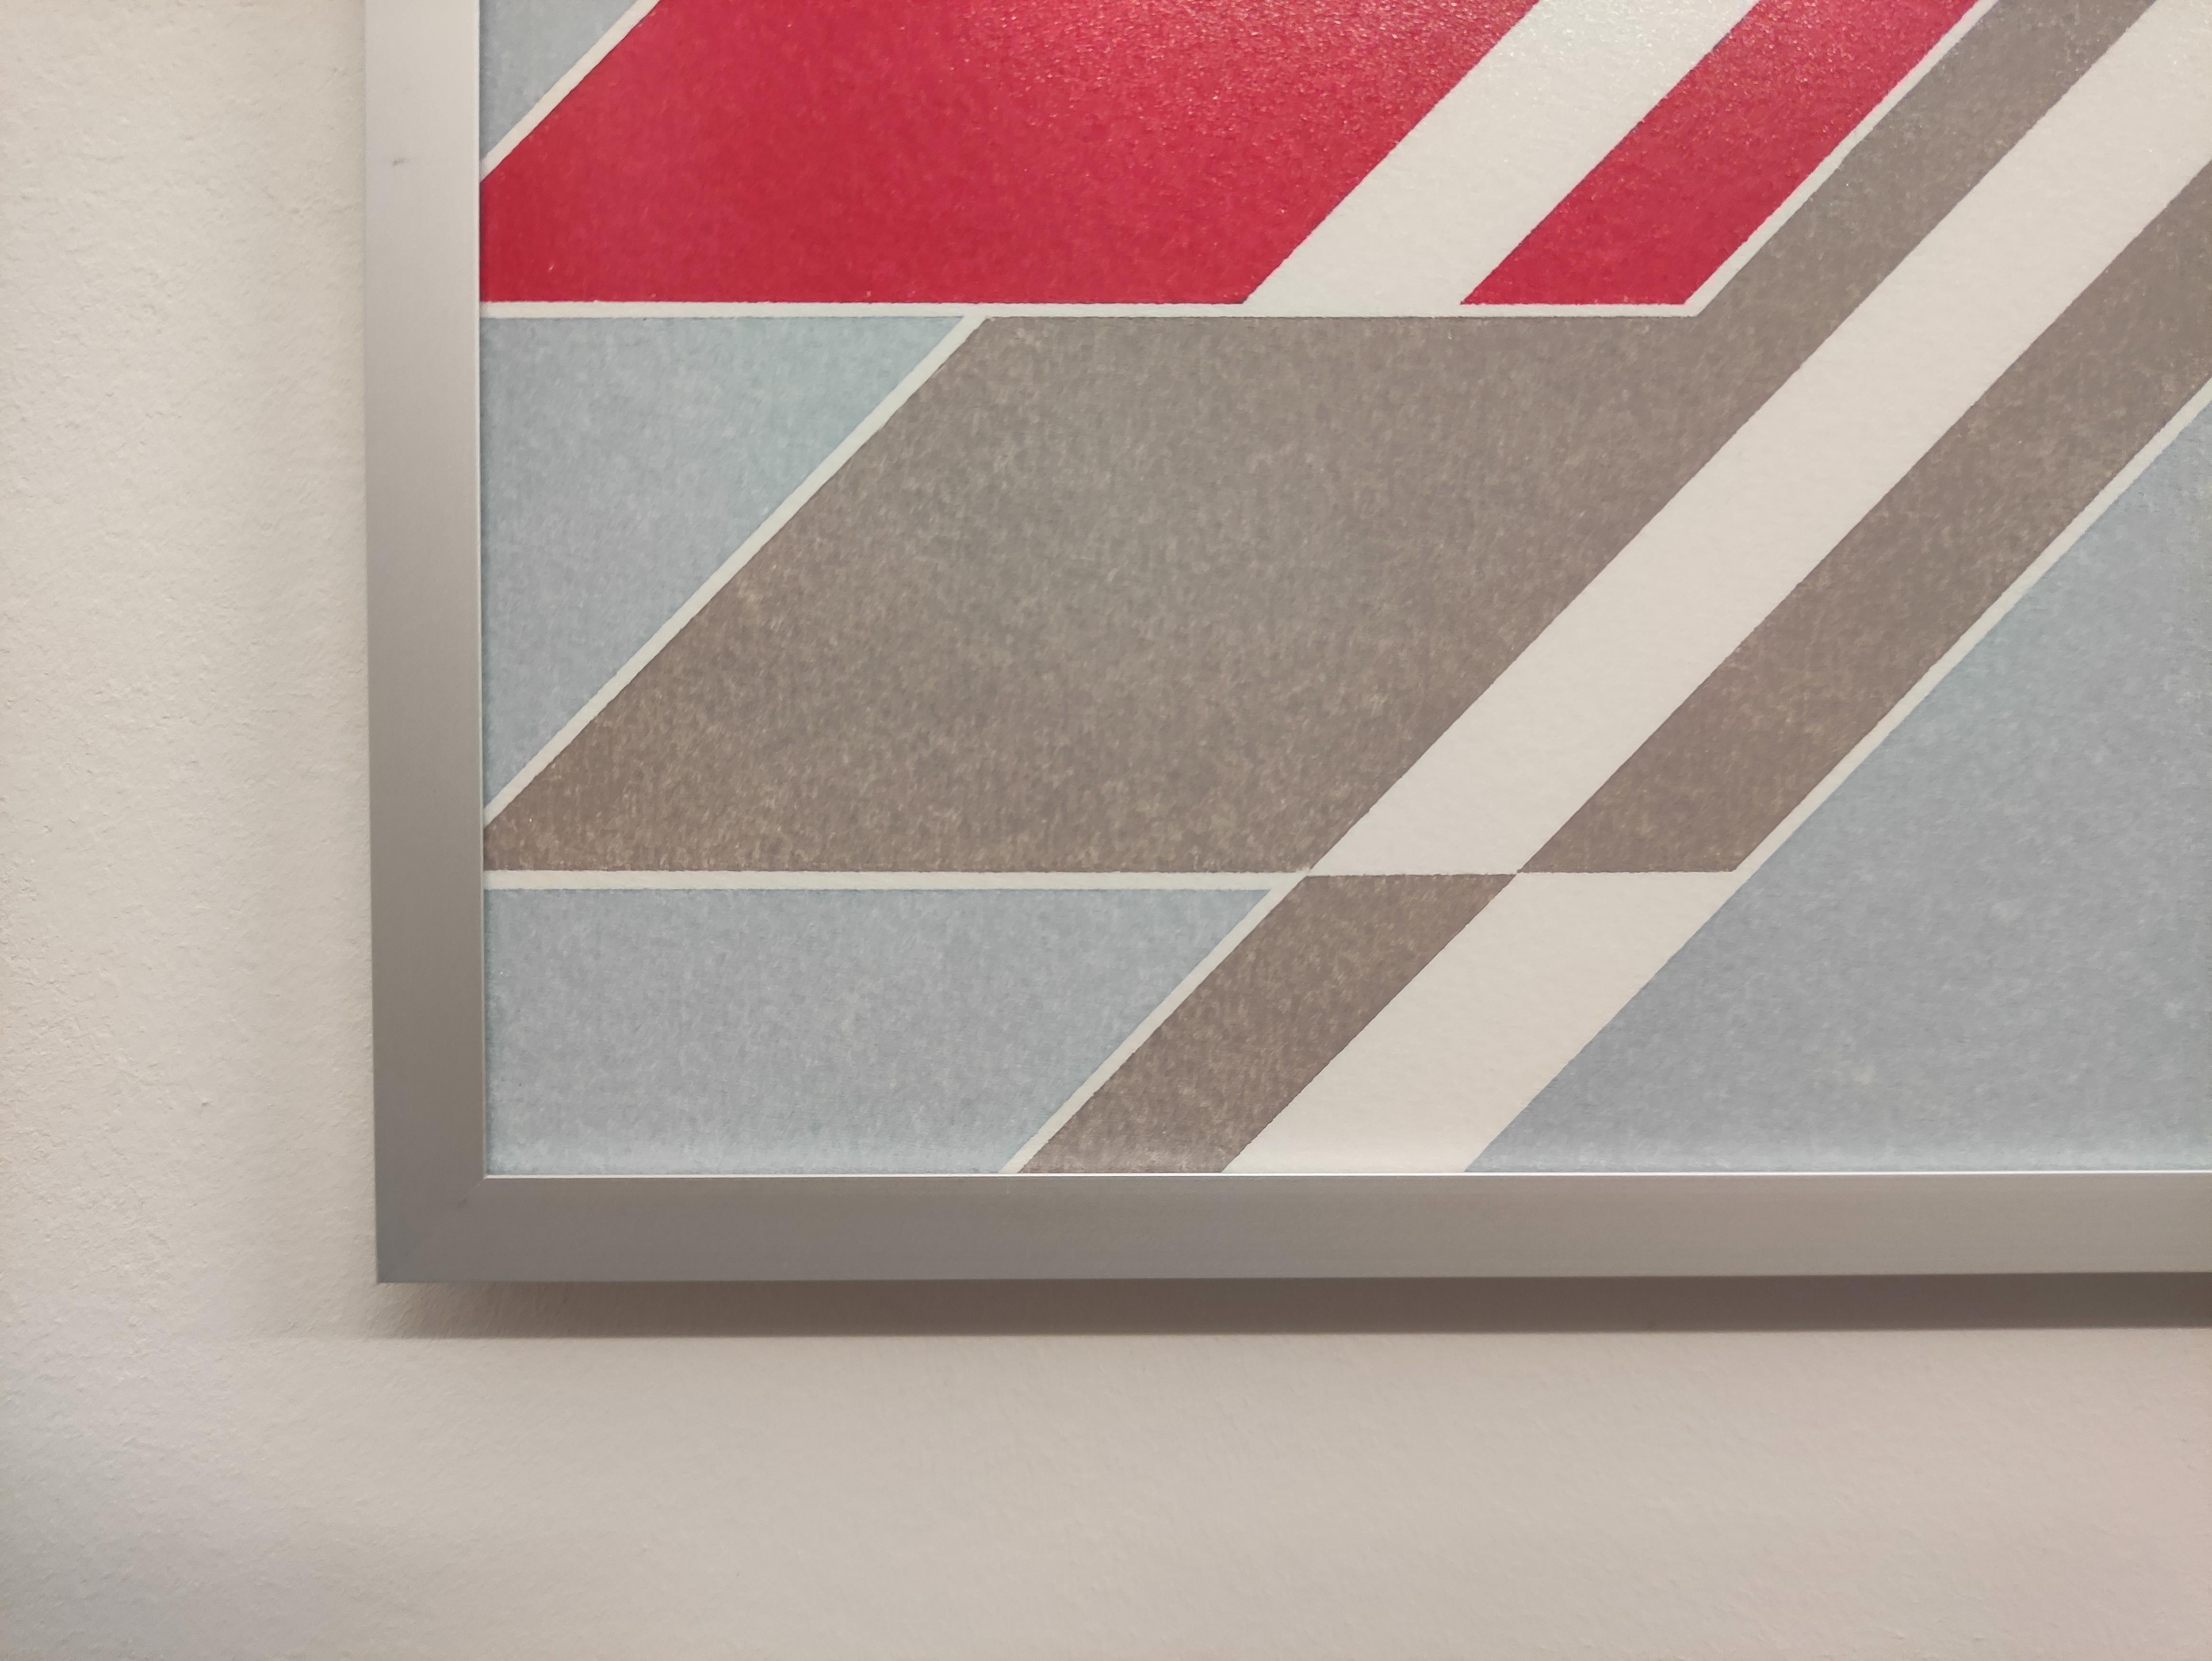  X  from The Message Series - Peinture abstraite contemporaine à l'huile au pastel, encadrée - Contemporain Art par Janusz Kokot